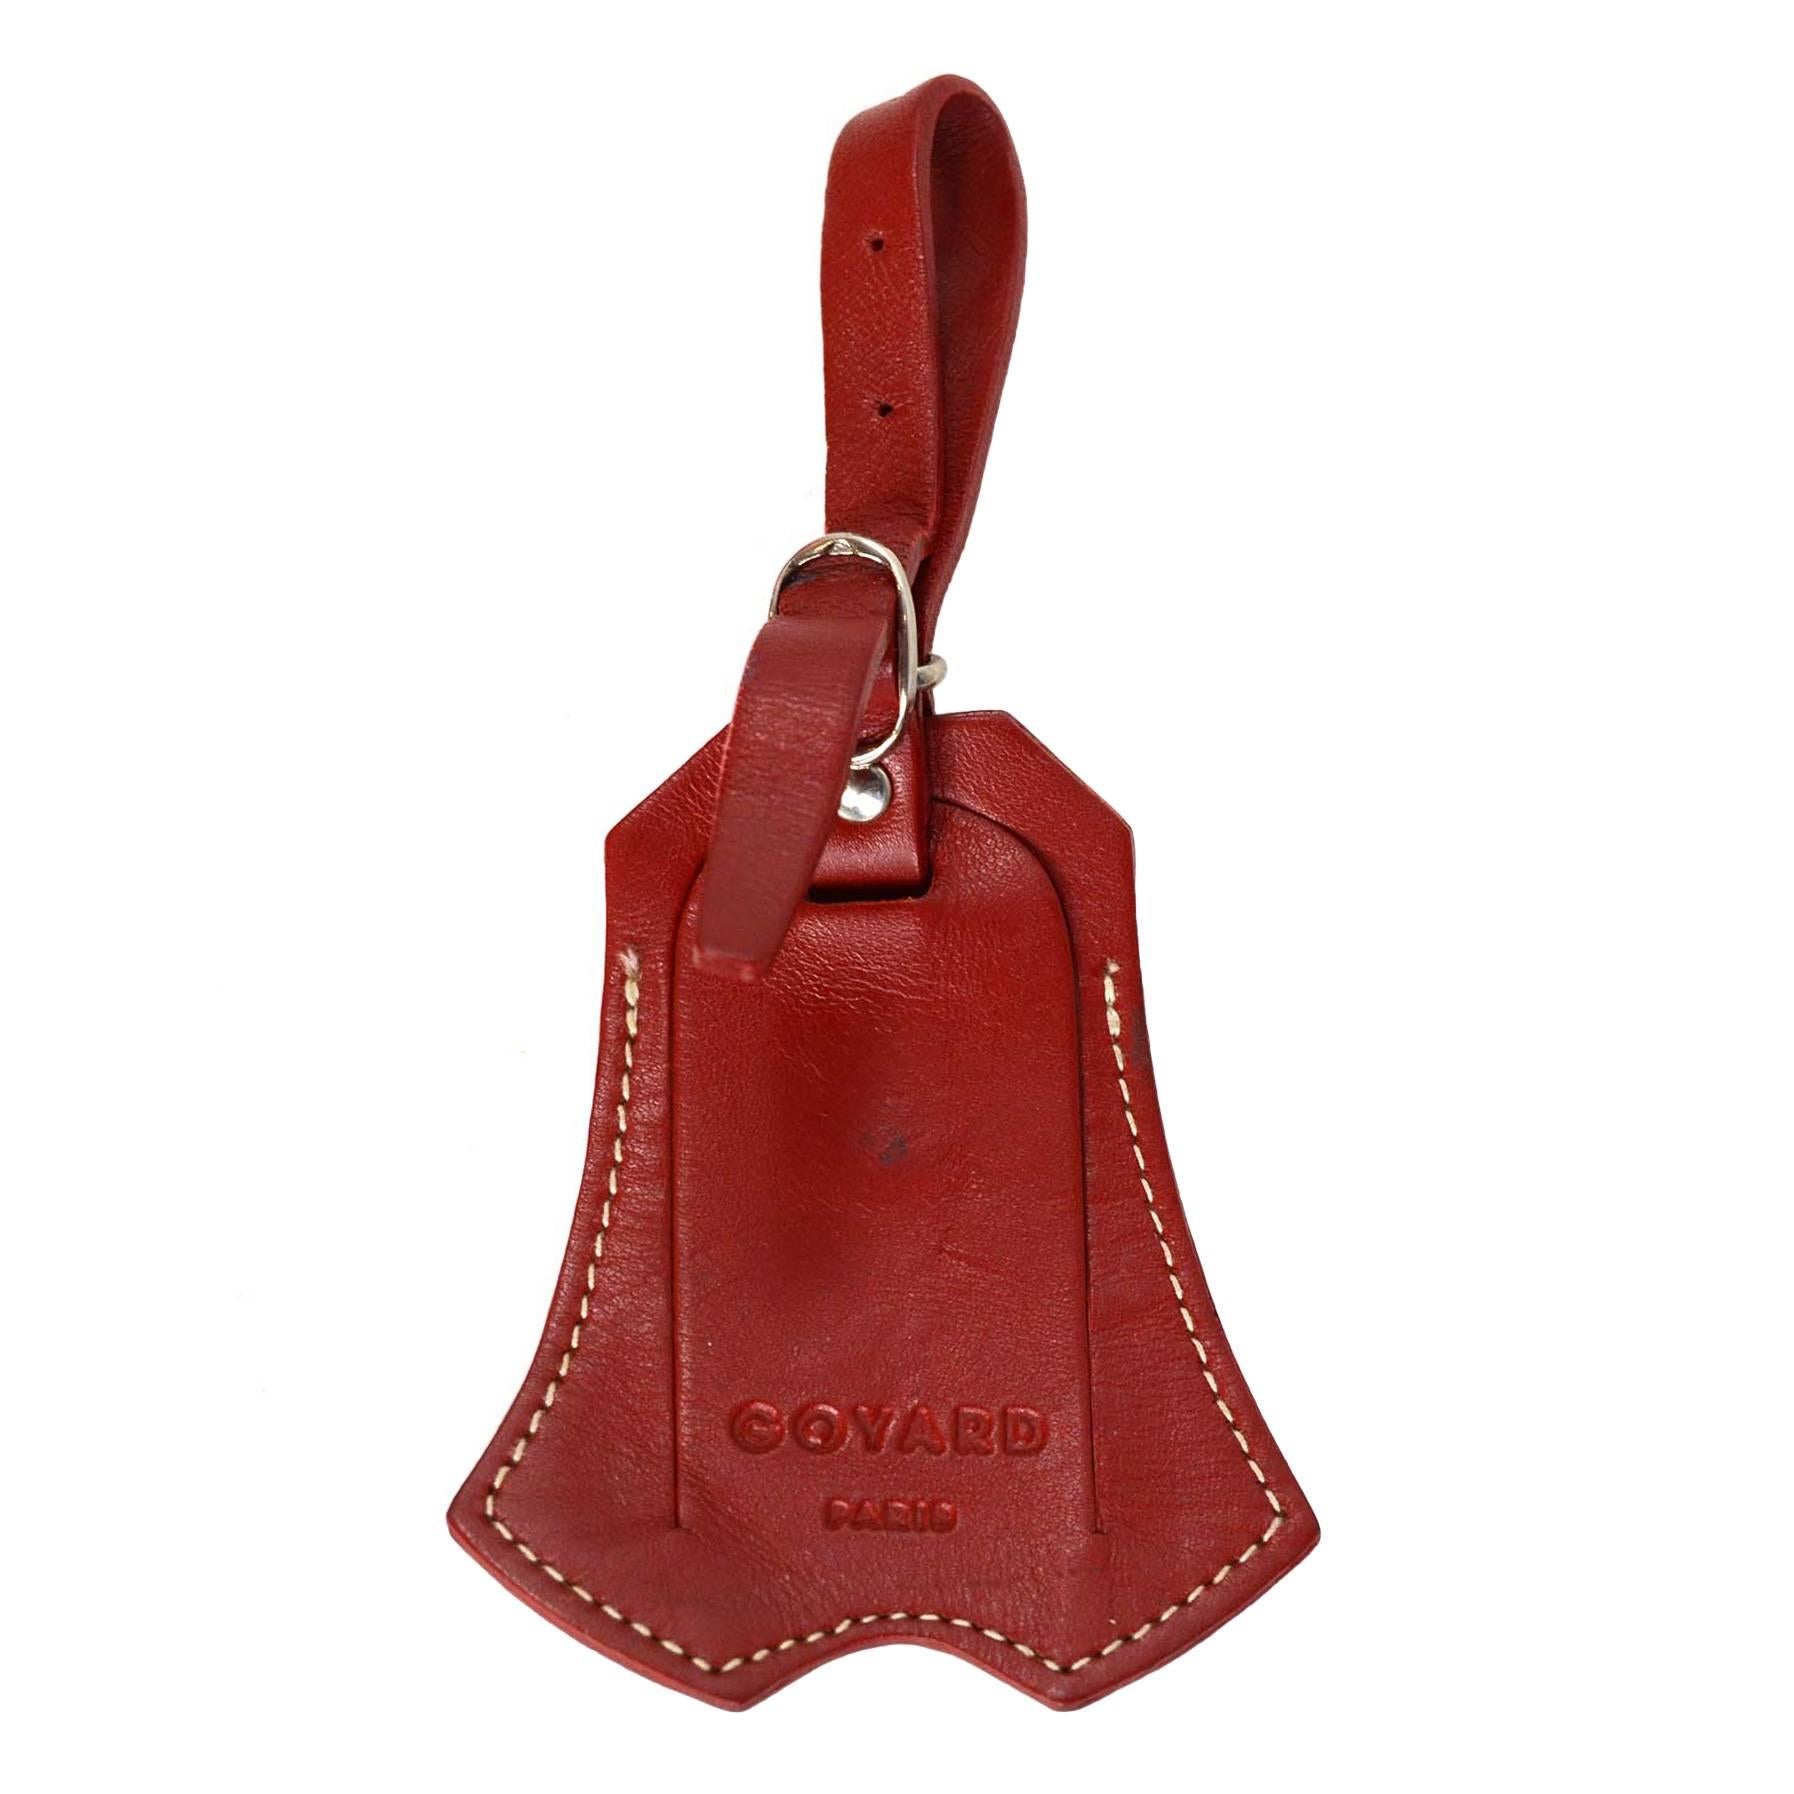 Goyard Red Leather Clochette & Luggage Tag SHW